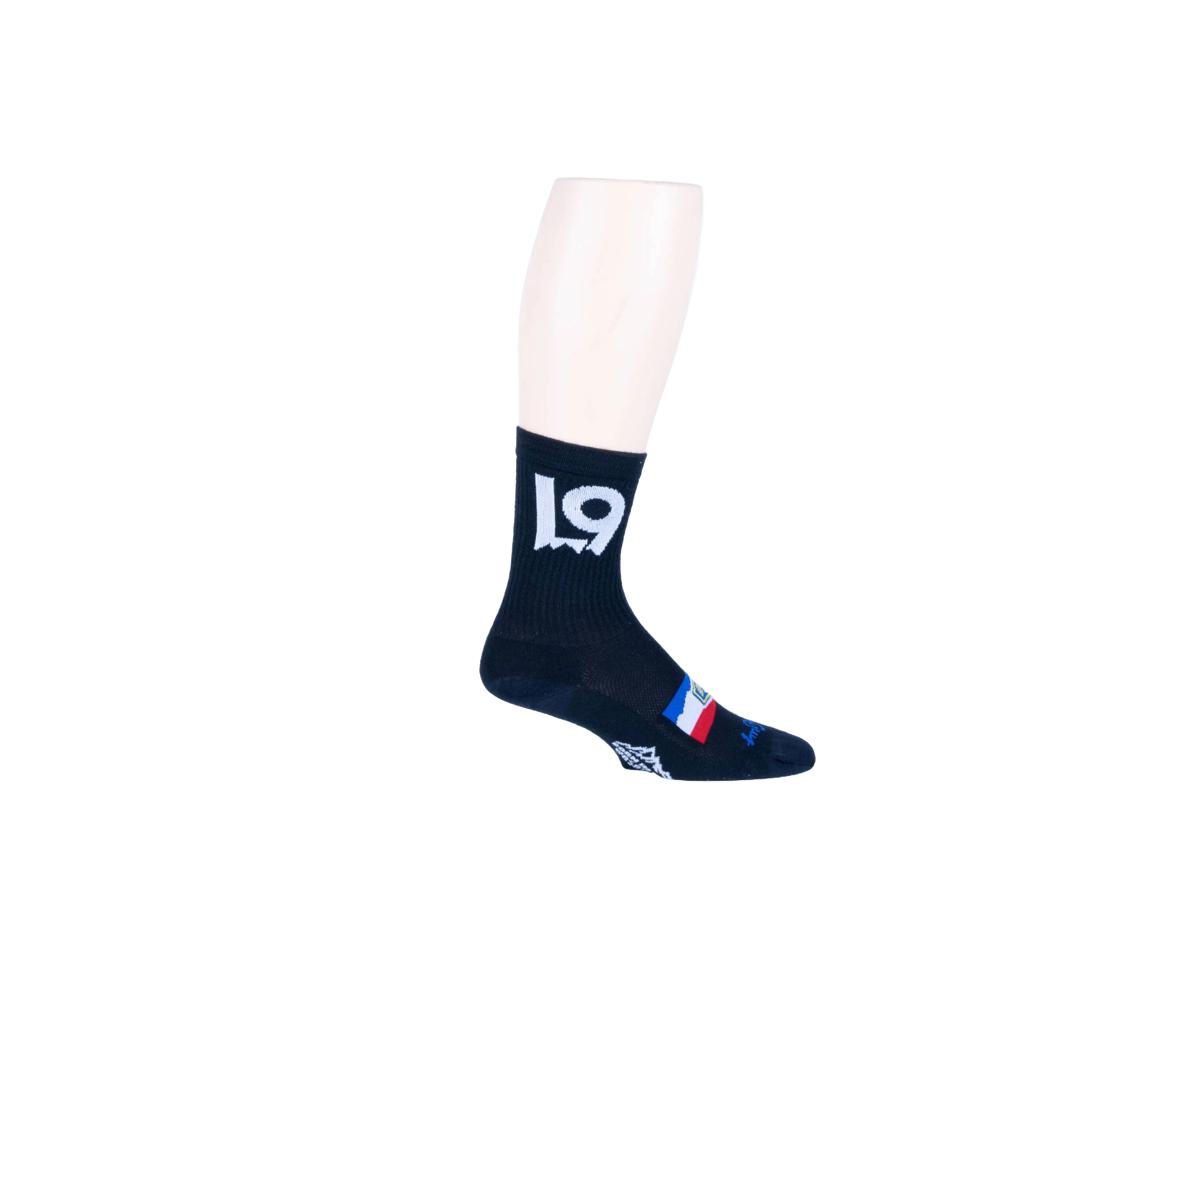 Sock Guy L9 Sports Custom Sockguy Classic Socks Black S/M Black S/M Misc Items Unisex